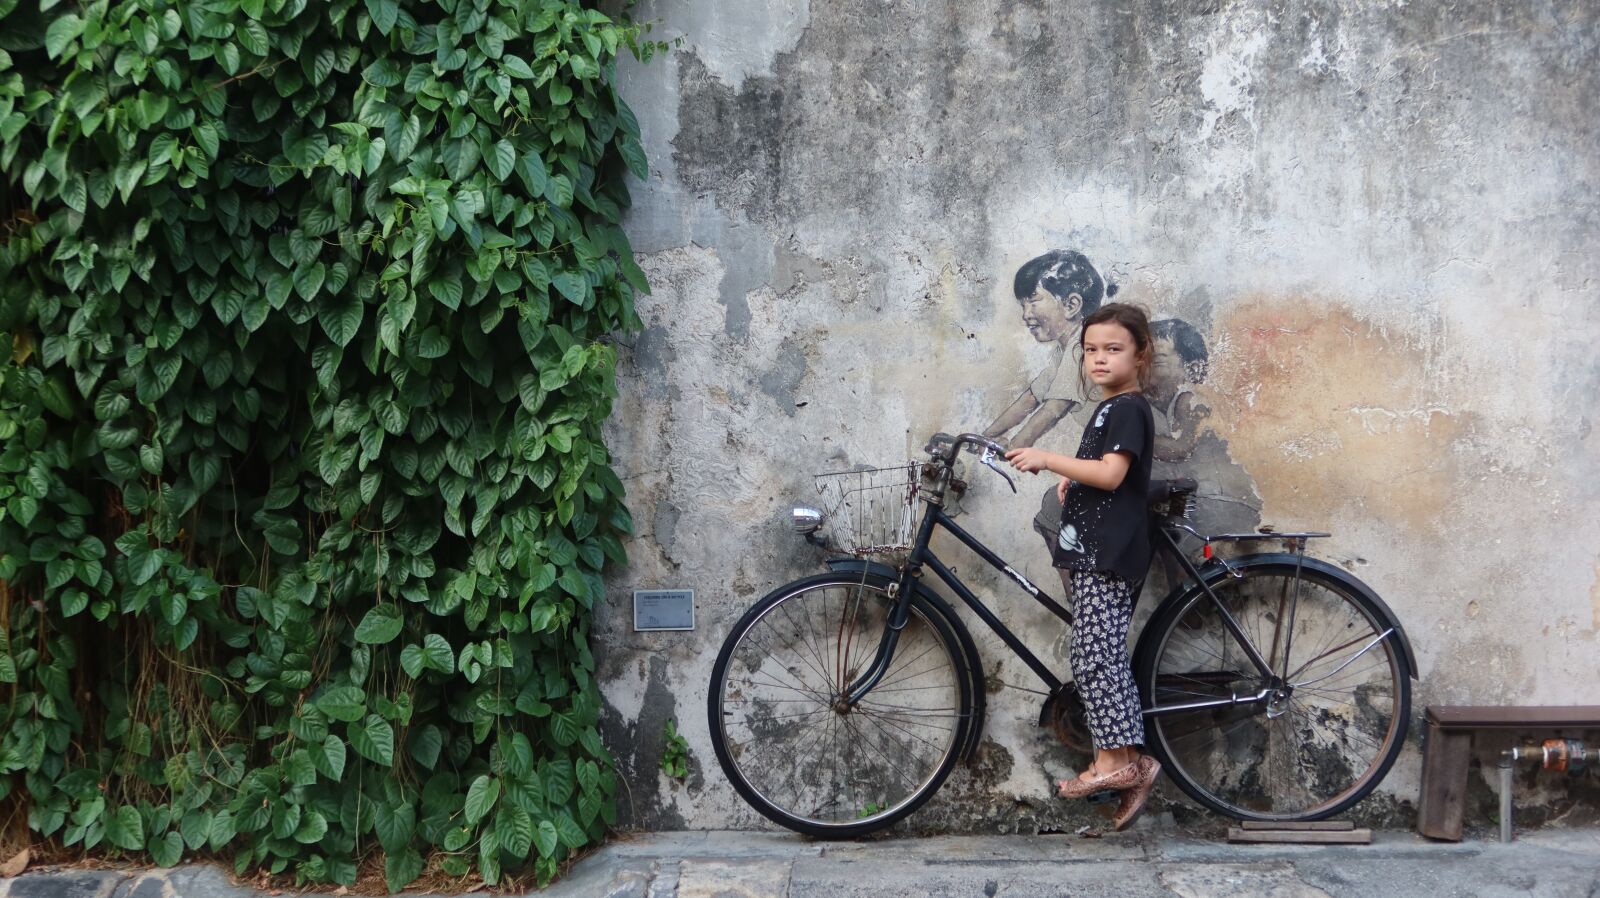 Canon PowerShot G7 X Mark III sample photo. Girl, penang, bike photography